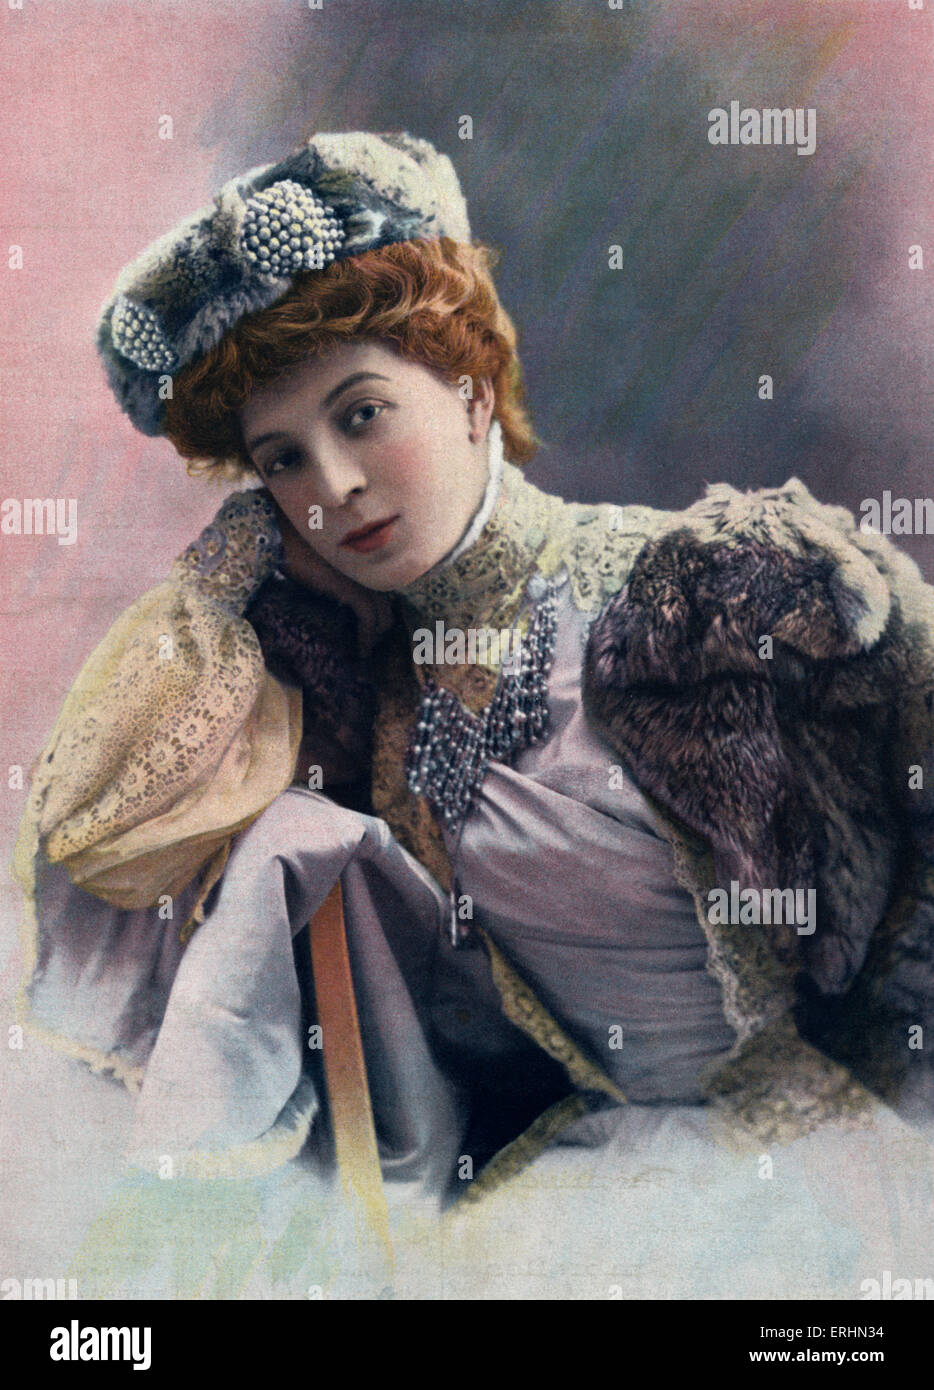 Simone le Bargy - comédienne au Théâtre du Gymnase. L'épouse de l'acteur français Auguste Gustave Charles le Bargy. SB : 28 août 1858 - 5 février 1936 Banque D'Images